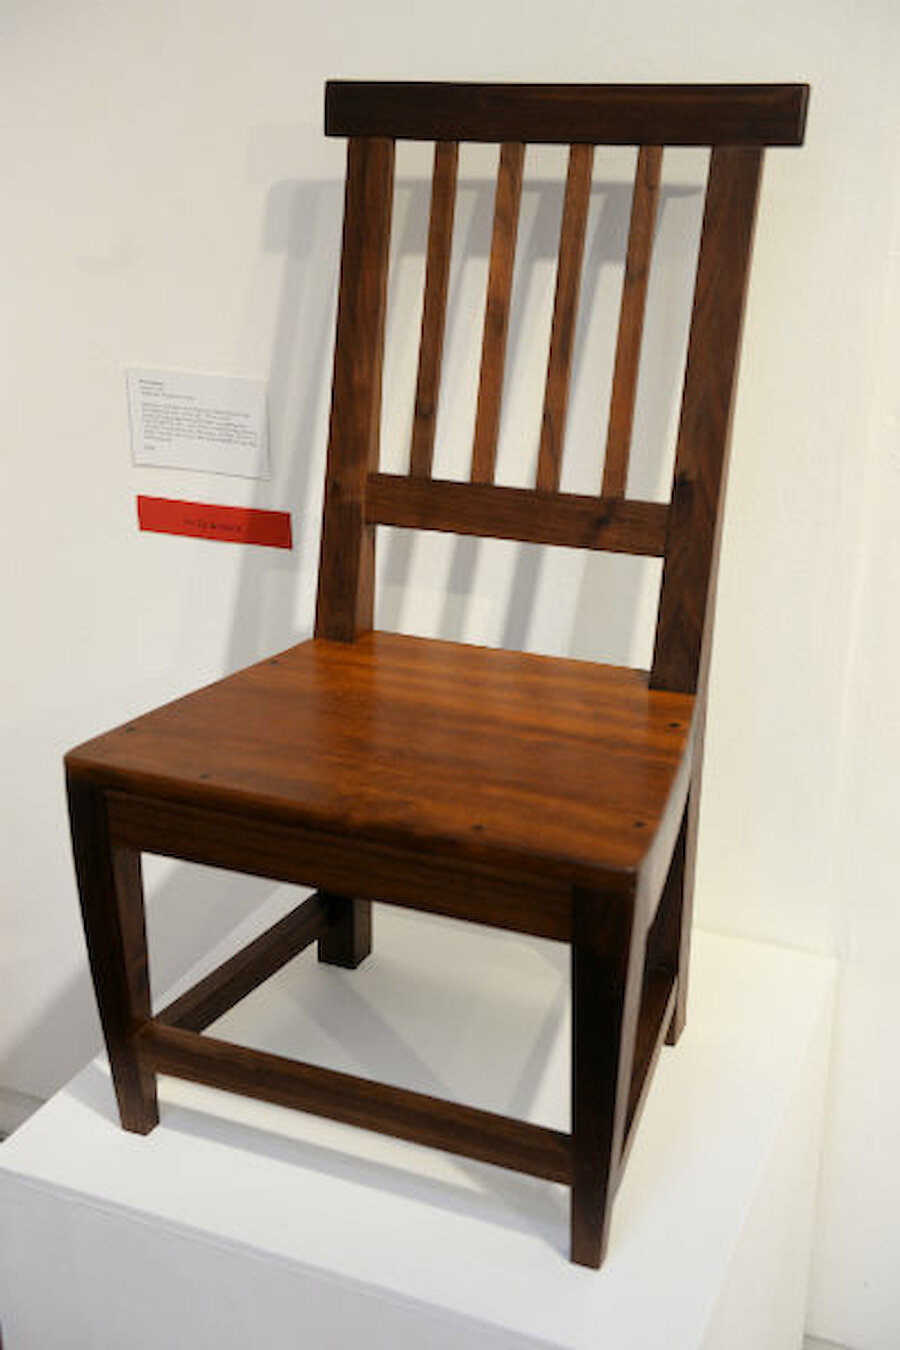 Eve Eunson's Leogh Chair (Courtesy Alastair Hamilton)